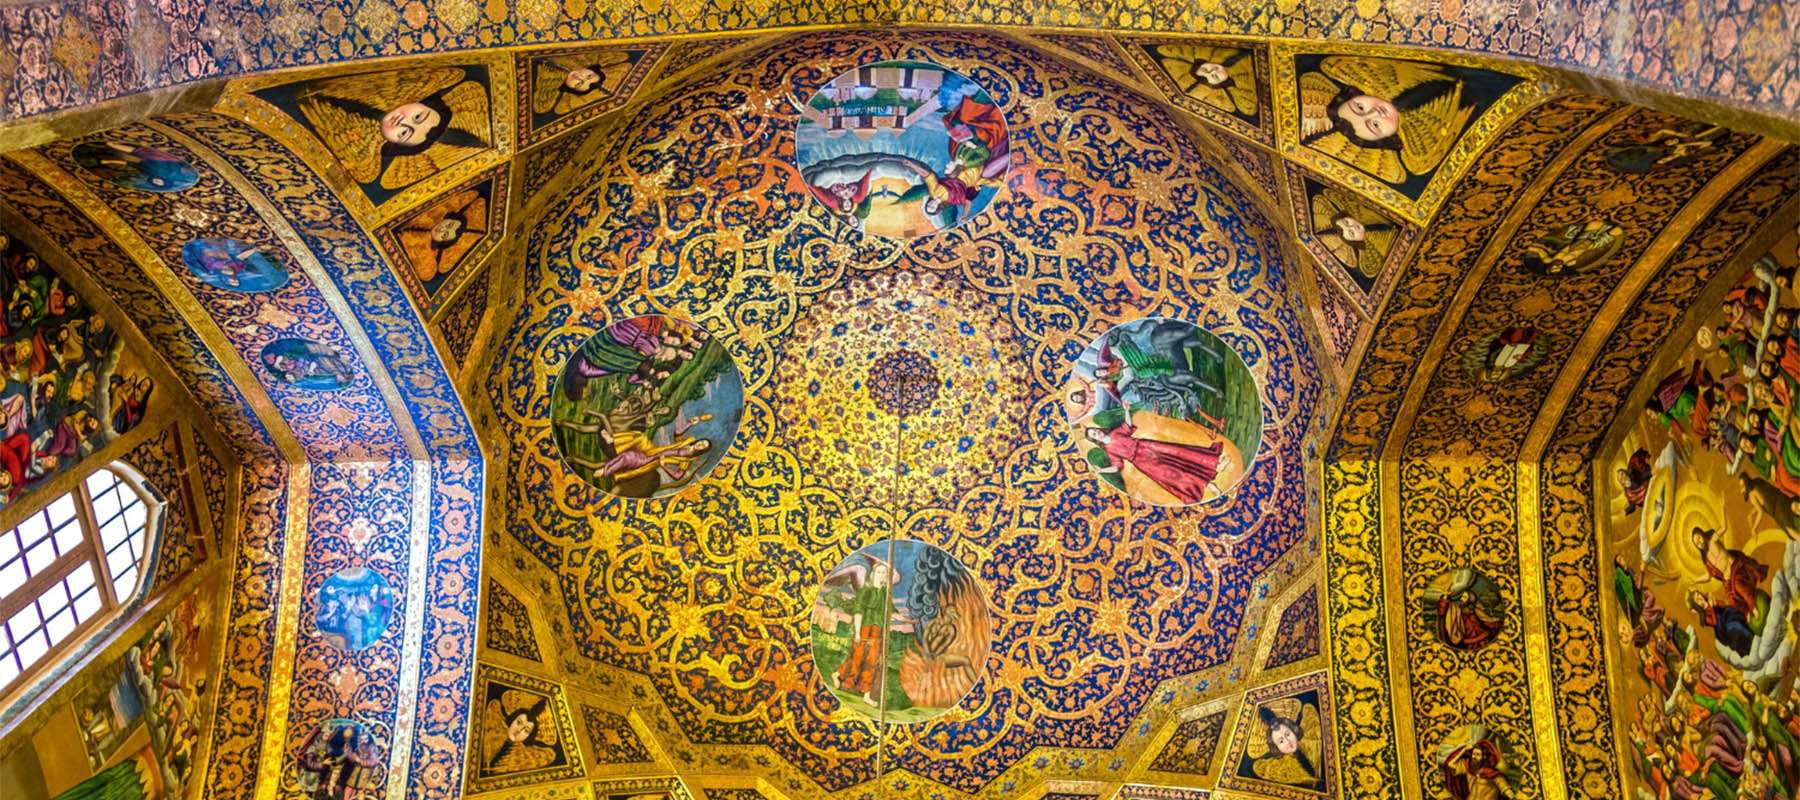 كنيسة وانك في أصفهان: شهادة للجمال والتاريخ